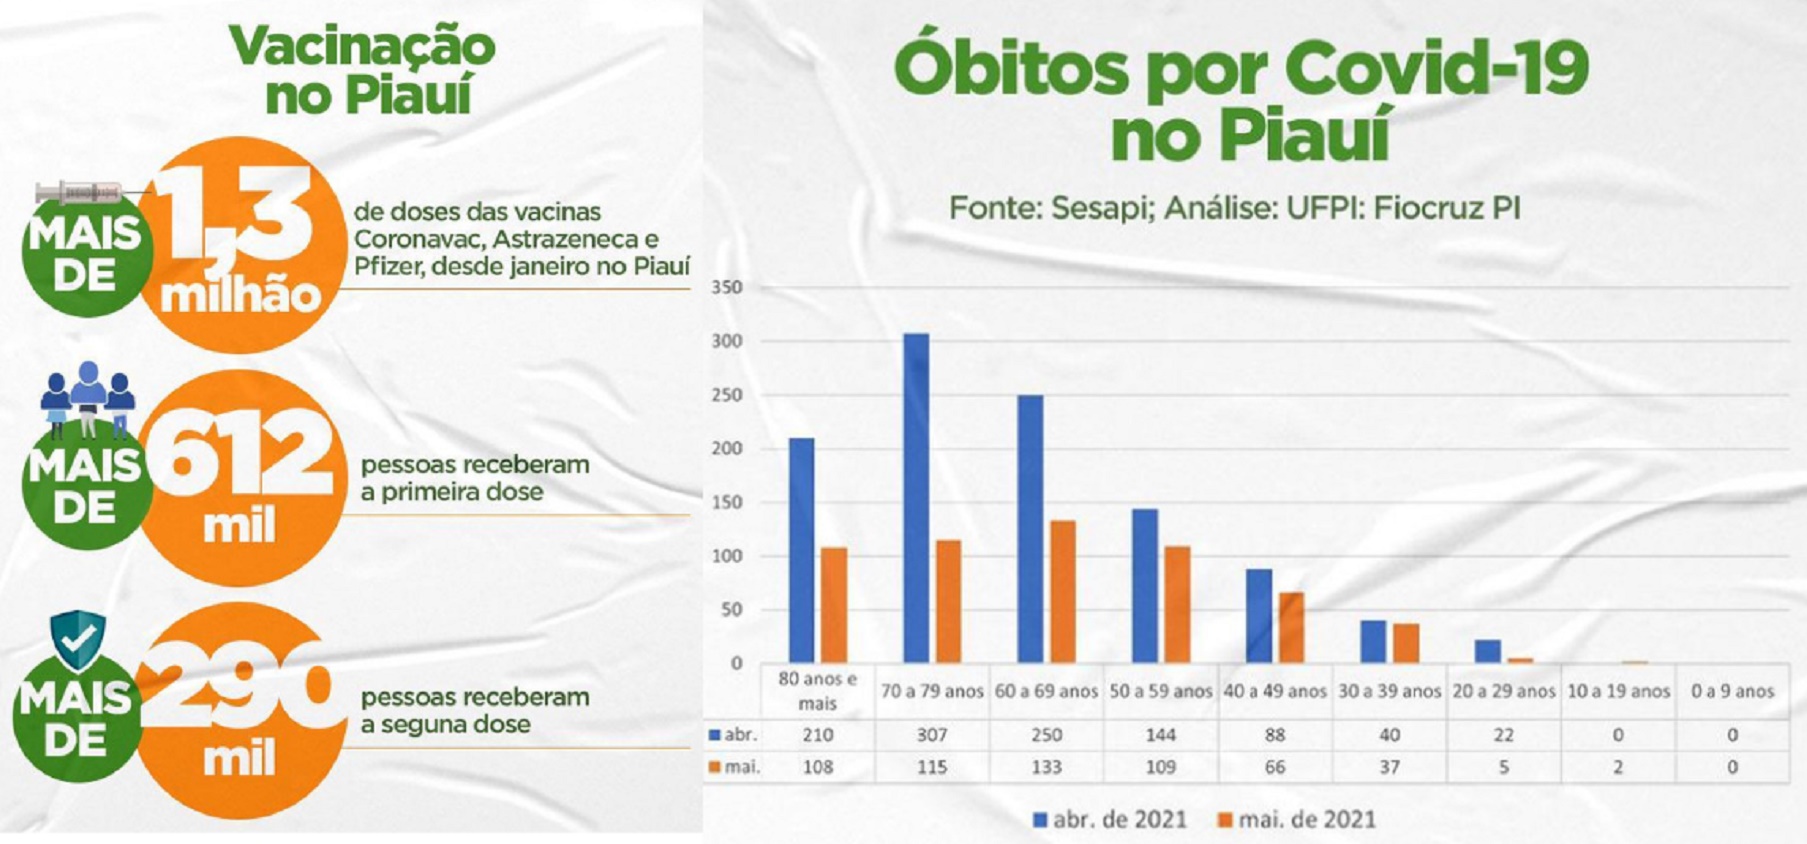 Dados divulgados pelo Governo do Piauí